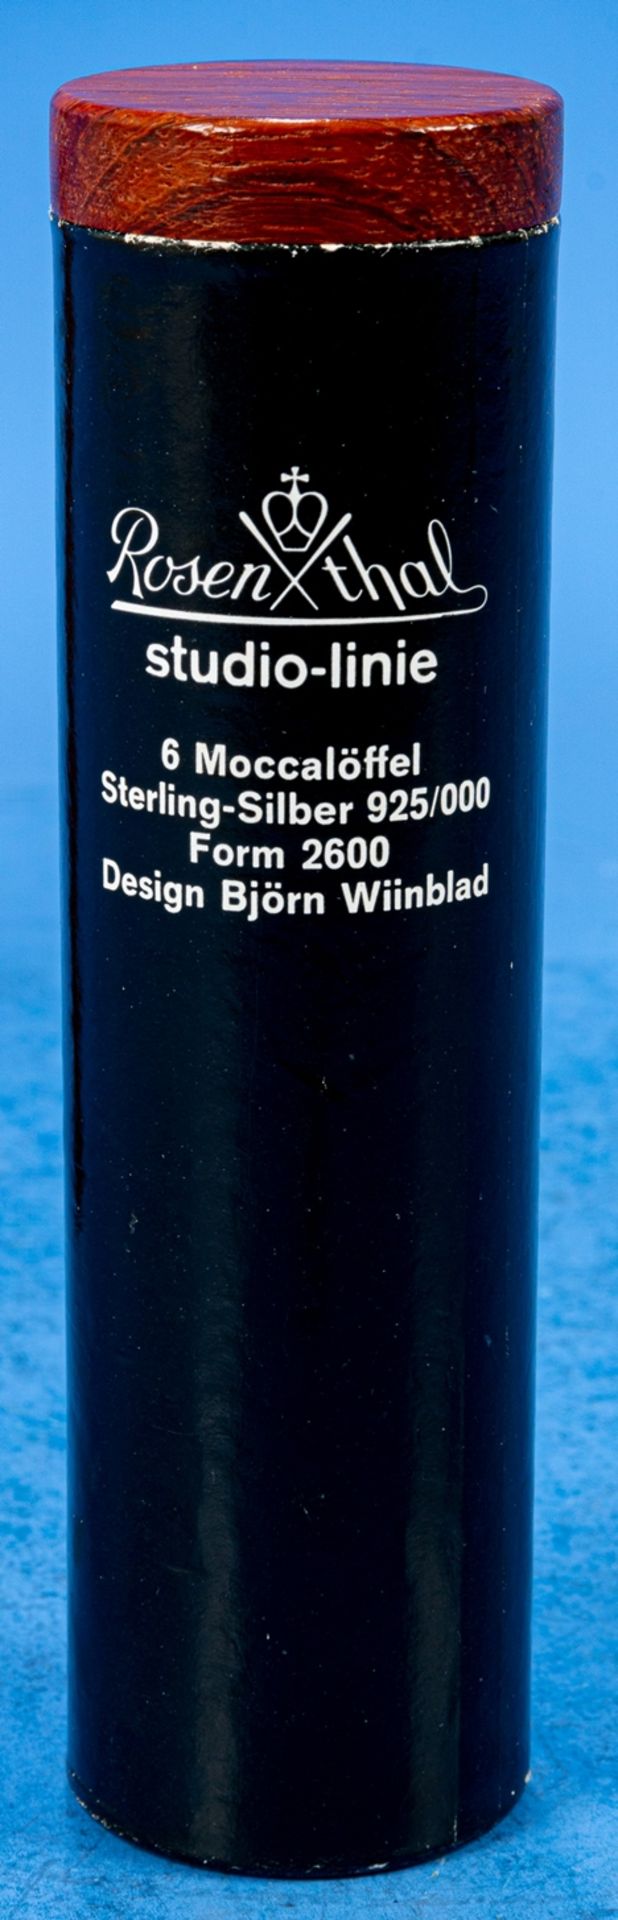 Folge von 8 Mocca-Löffeln, Rosenthal, 925er Sterlingsilber, Form-Nr. 2600, designed by Björn Wiinbl - Image 3 of 4